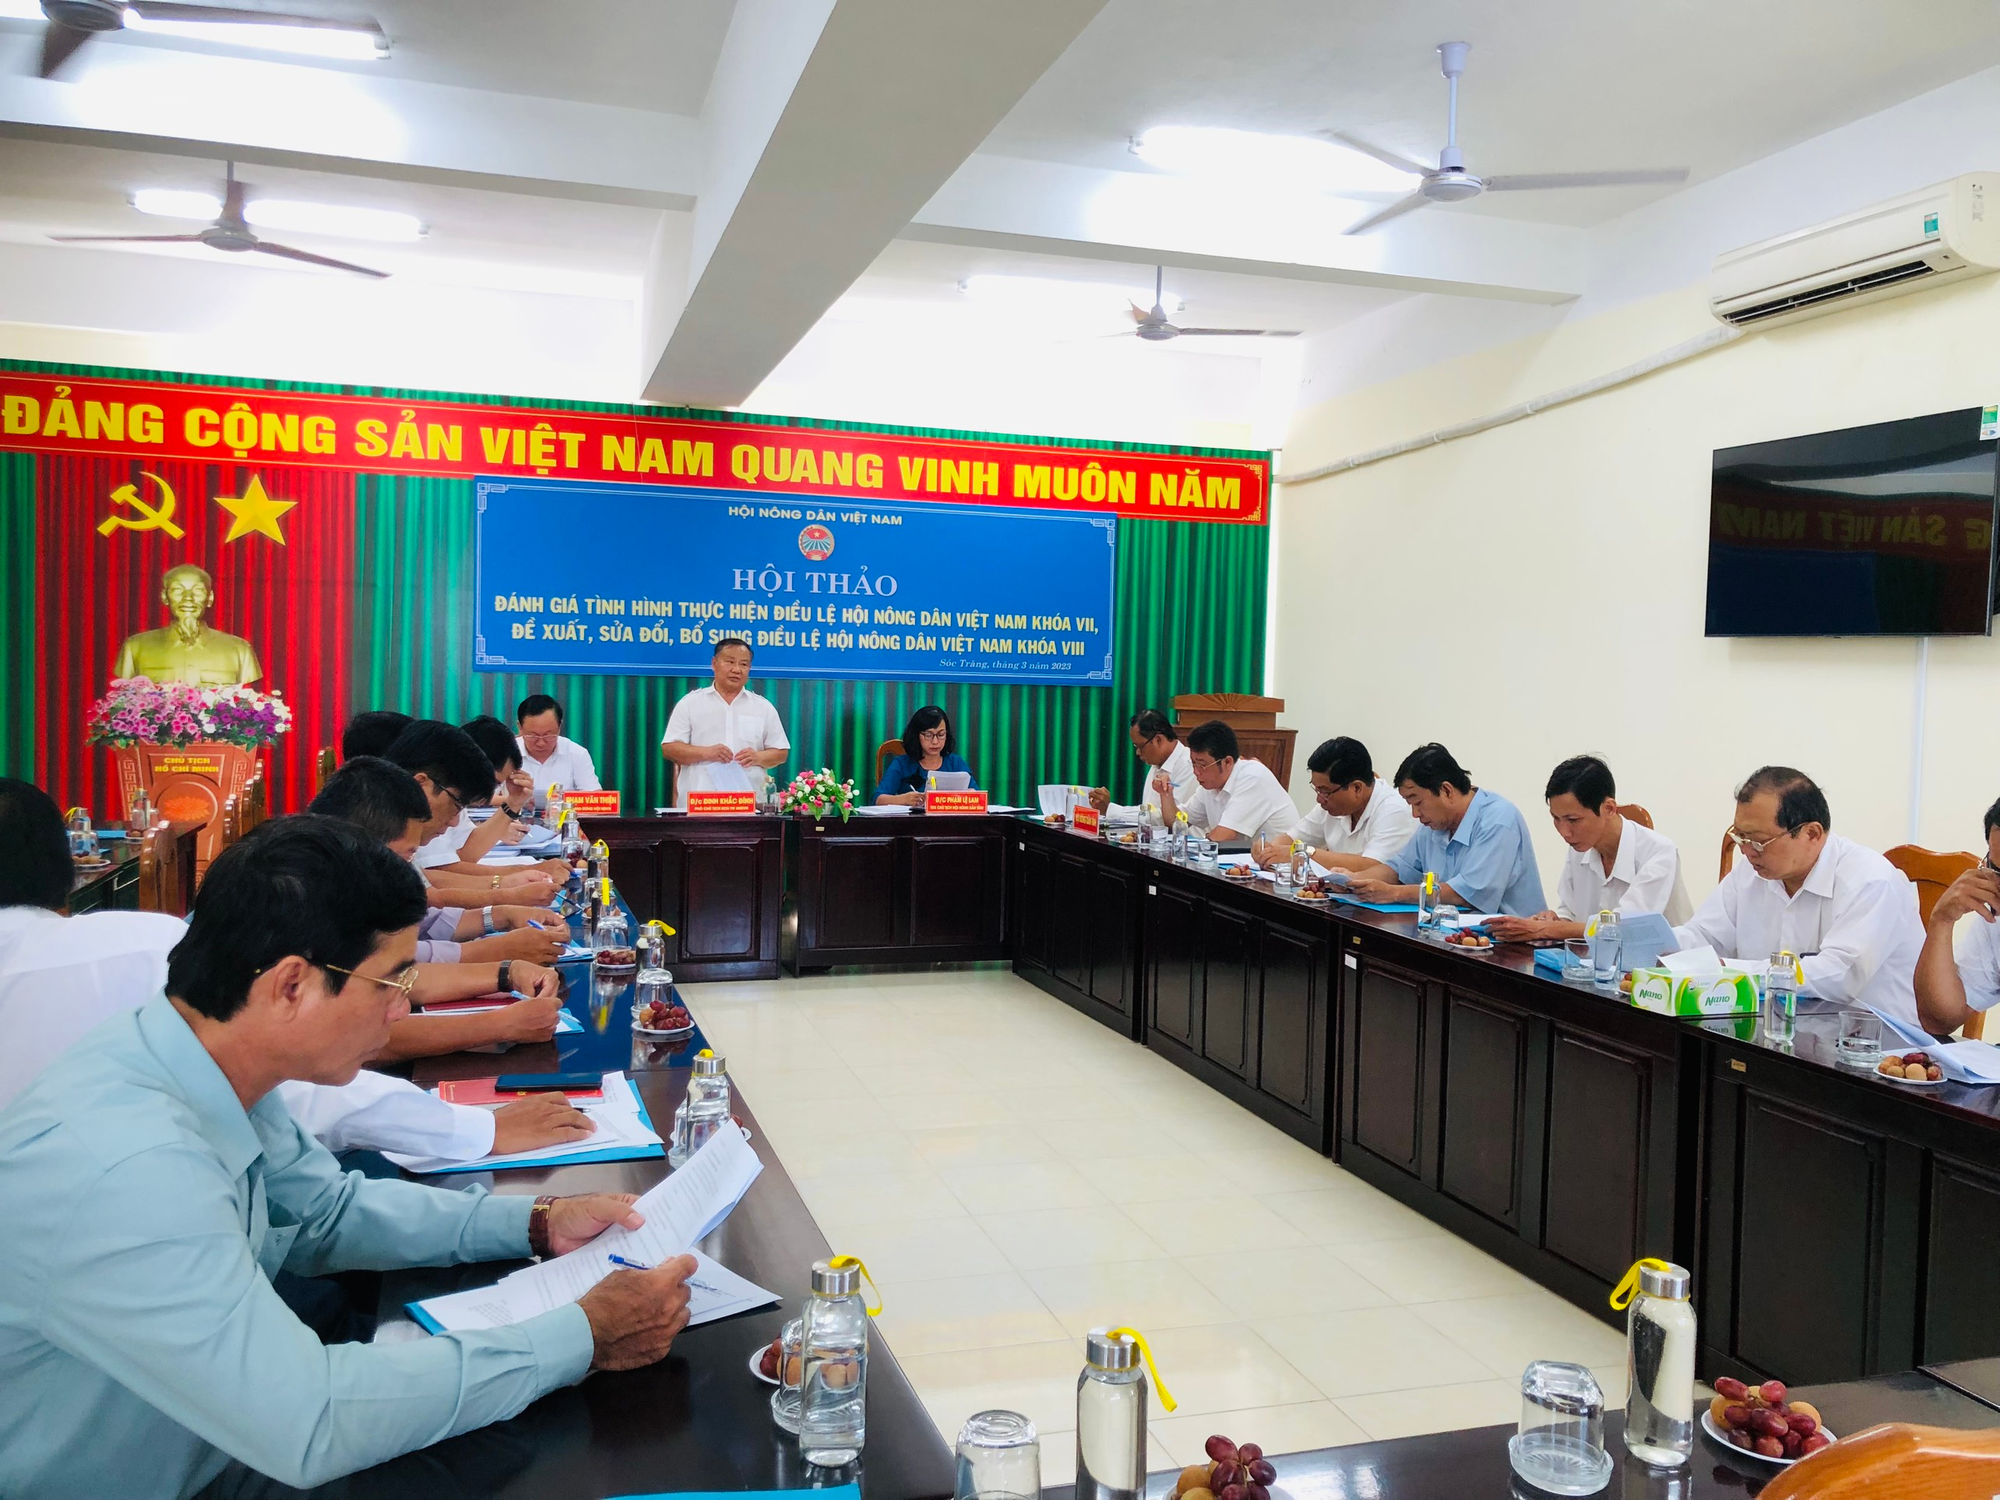 Phó Chủ tịch Hội Nông dân Việt Nam Đinh Khắc Đính khảo sát thực hiện Điều lệ Hội tại Hội Nông dân Sóc Trăng - Ảnh 2.